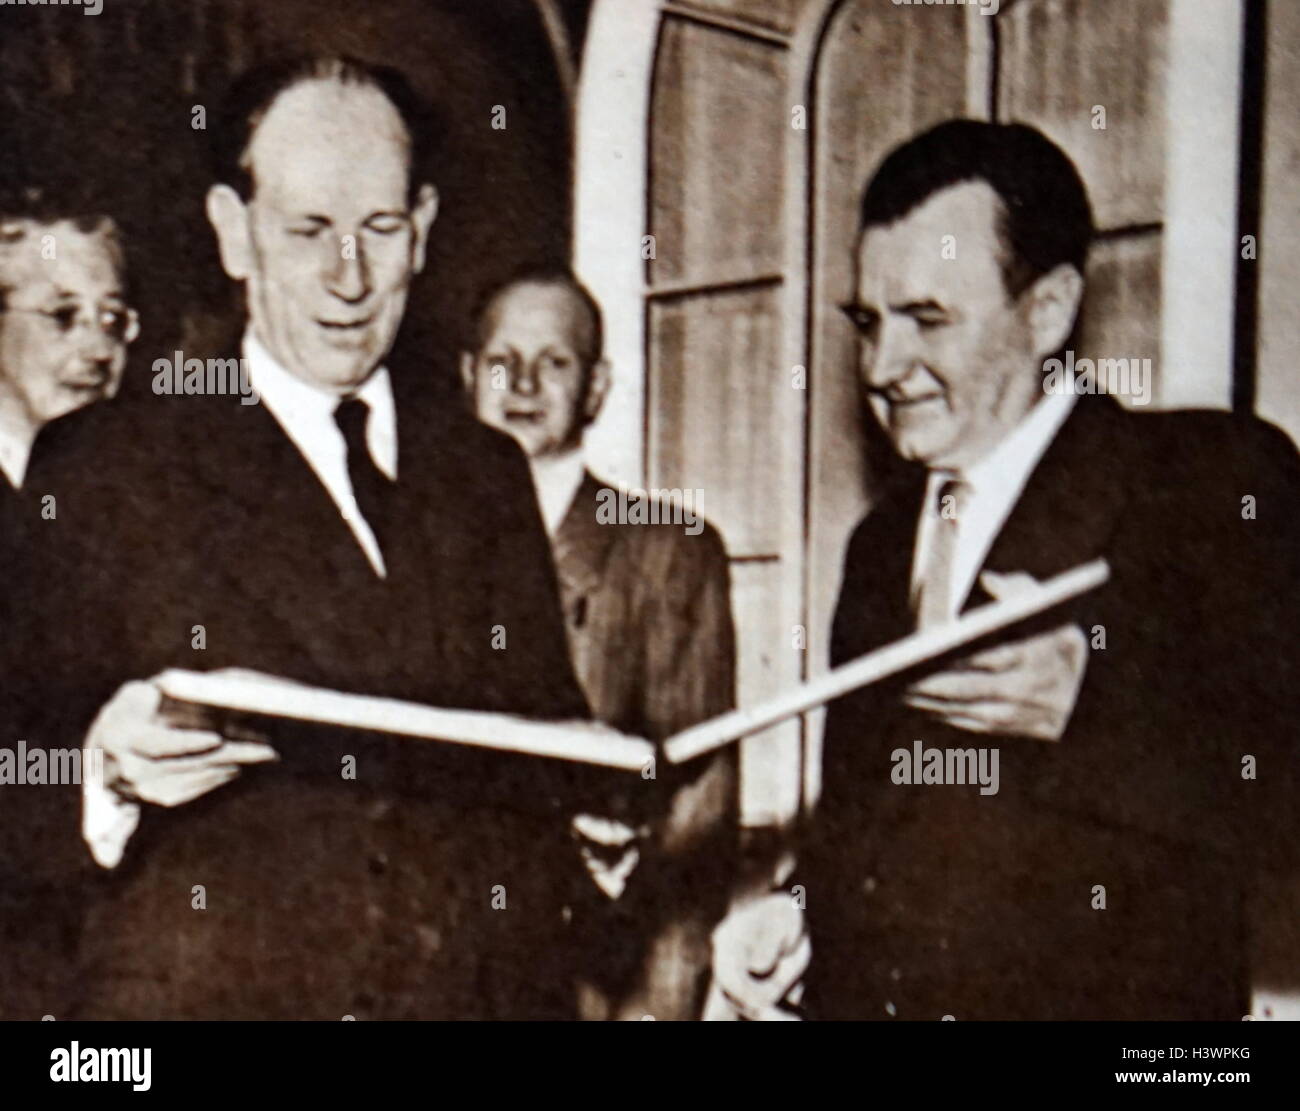 Photograph of Klement Gottwald (1896-1953) Prime Minister of Czechoslovakia and Antonín Zápotocký (1884-1957) President of Czechoslovakia. Dated 20th Century Stock Photo